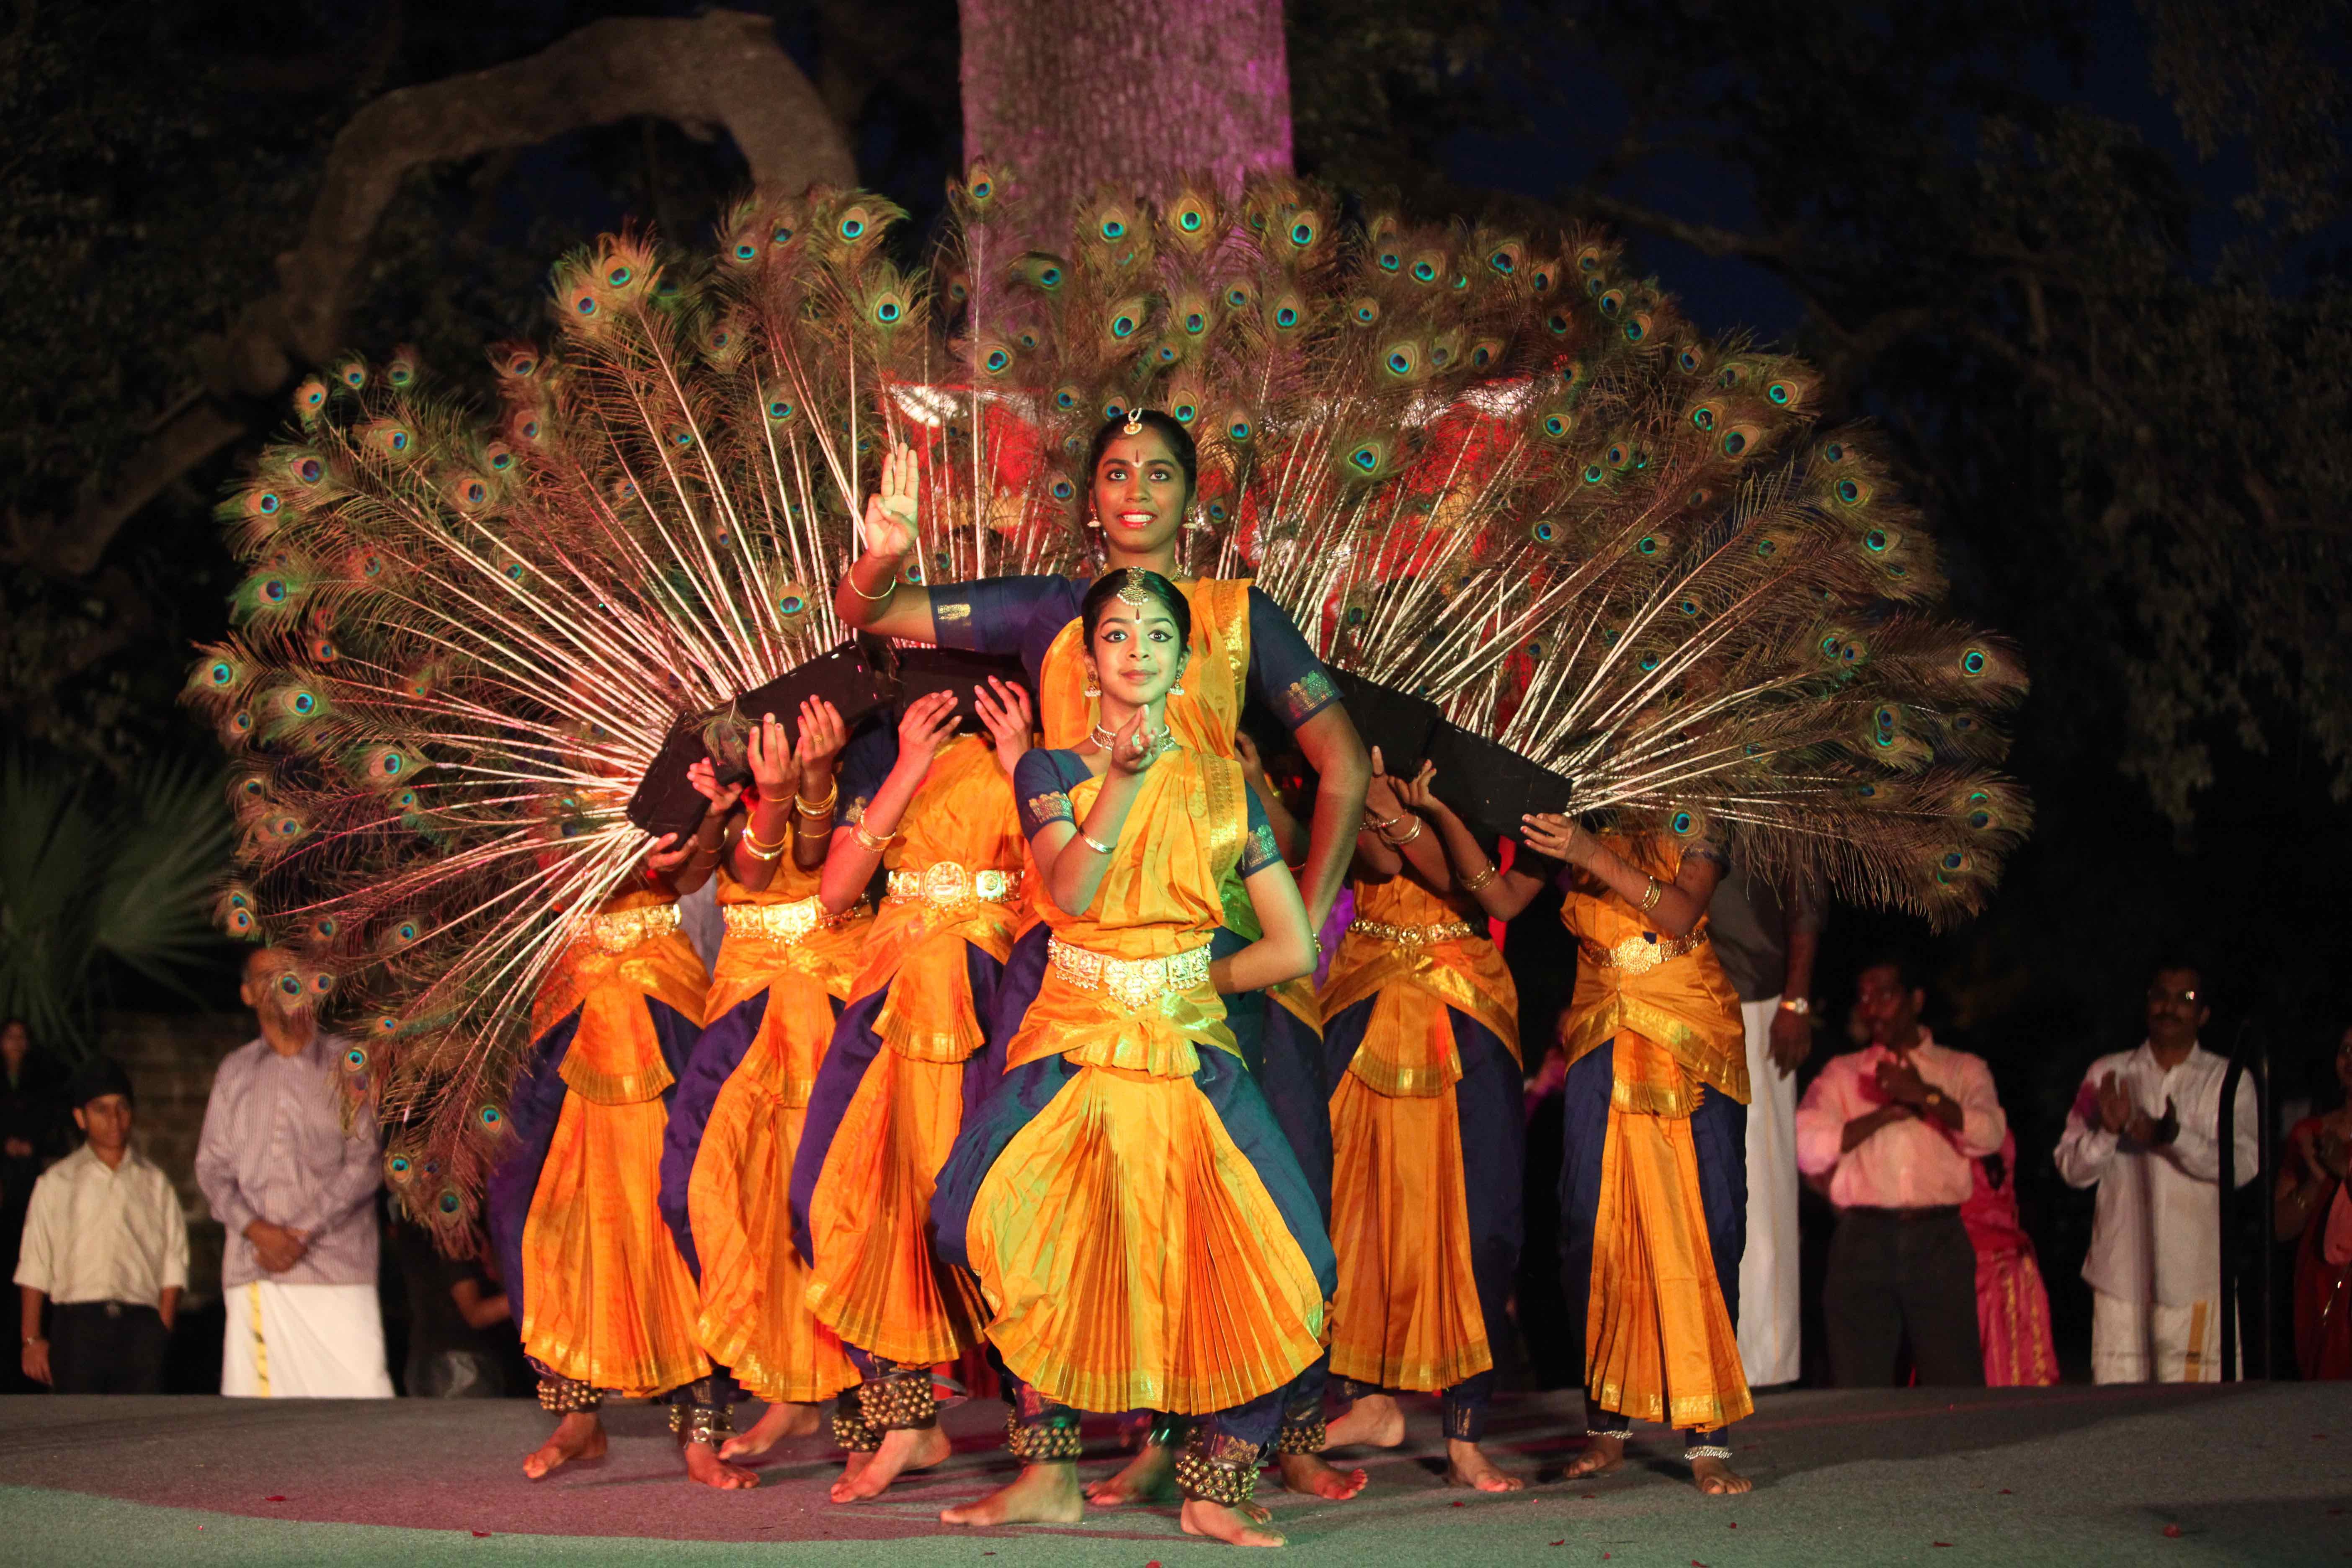 Annual Diwali celebration returns to downtown San Antonio this Saturday